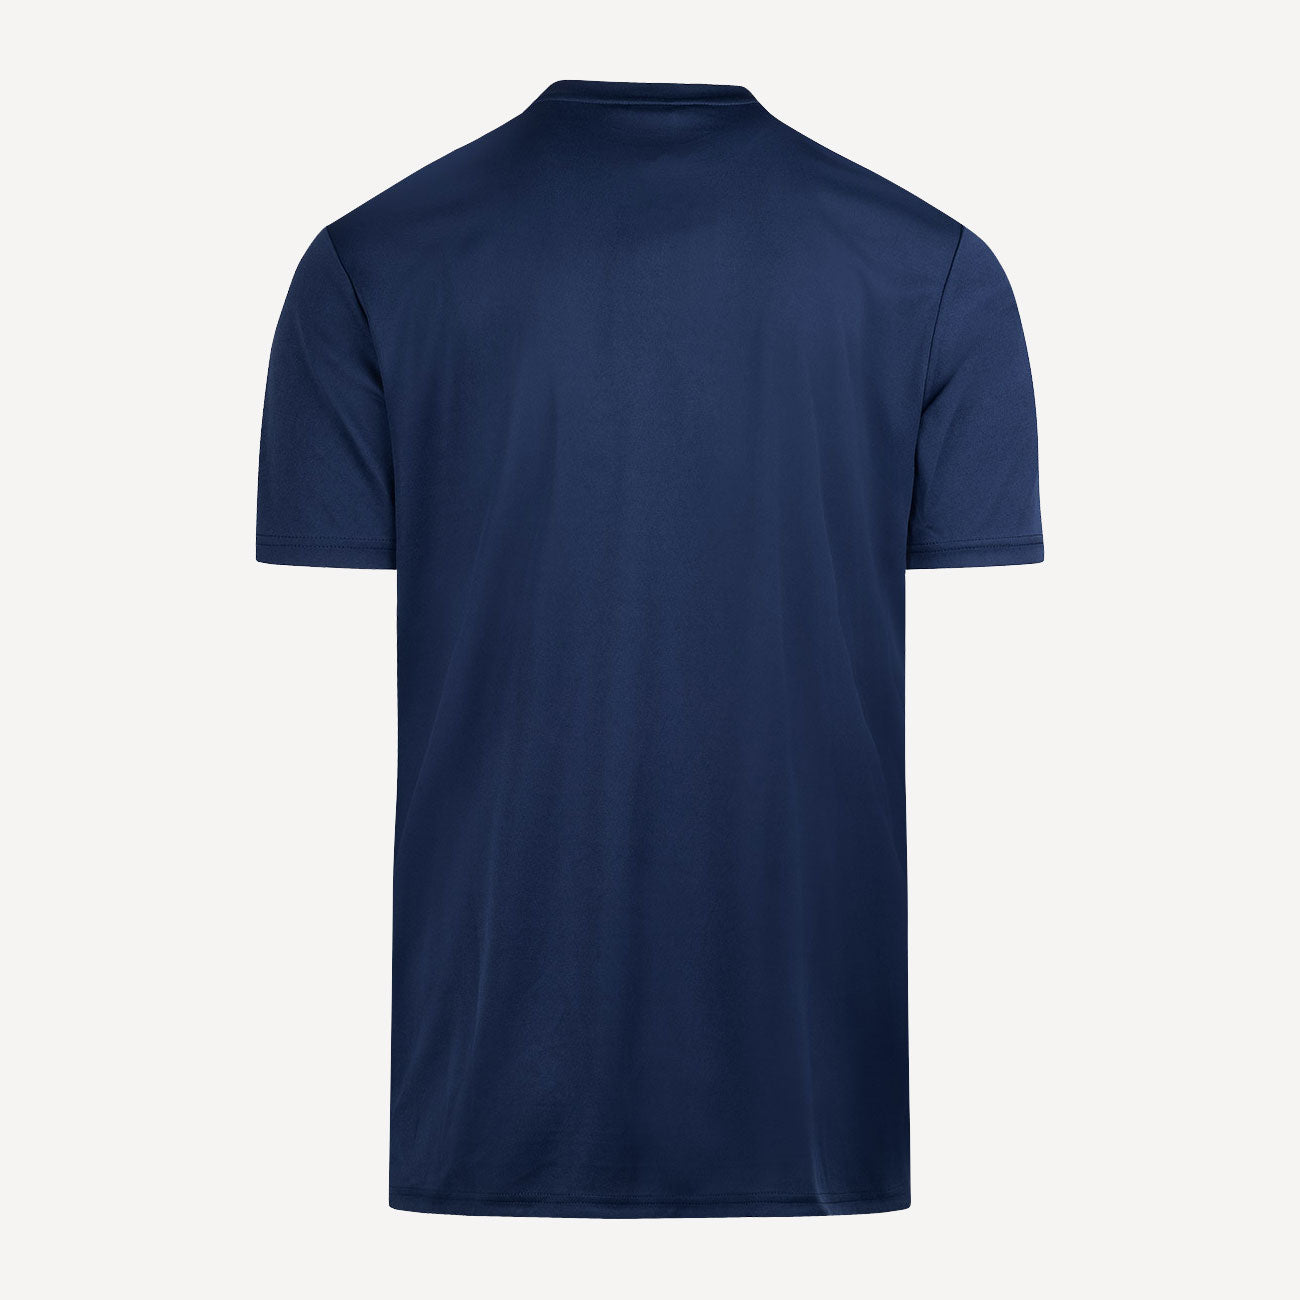 Robey Crossbar Kids' Shirt - TC Nieuwerkerk Dark Blue (2)